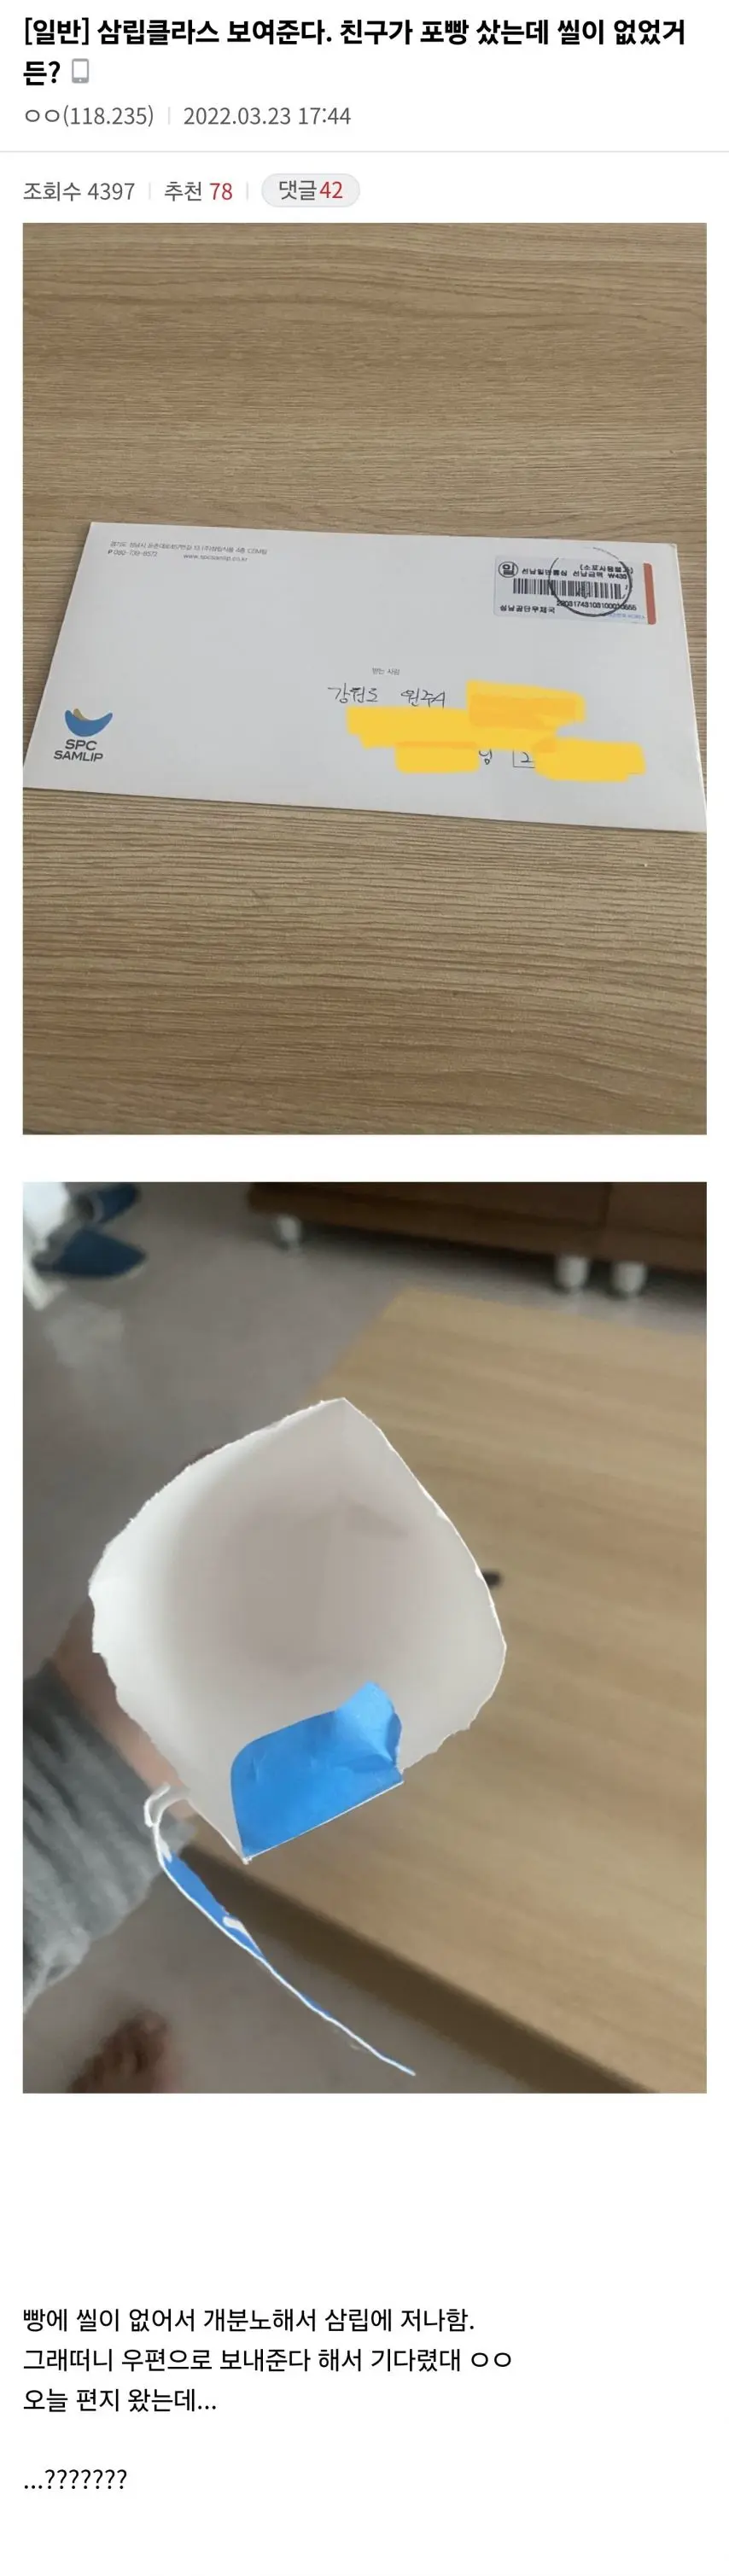 포켓몬 빵에 씰이 없다는 클레임을 받은 삼립의 고객대응 클래스.jpg | mbong.kr 엠봉